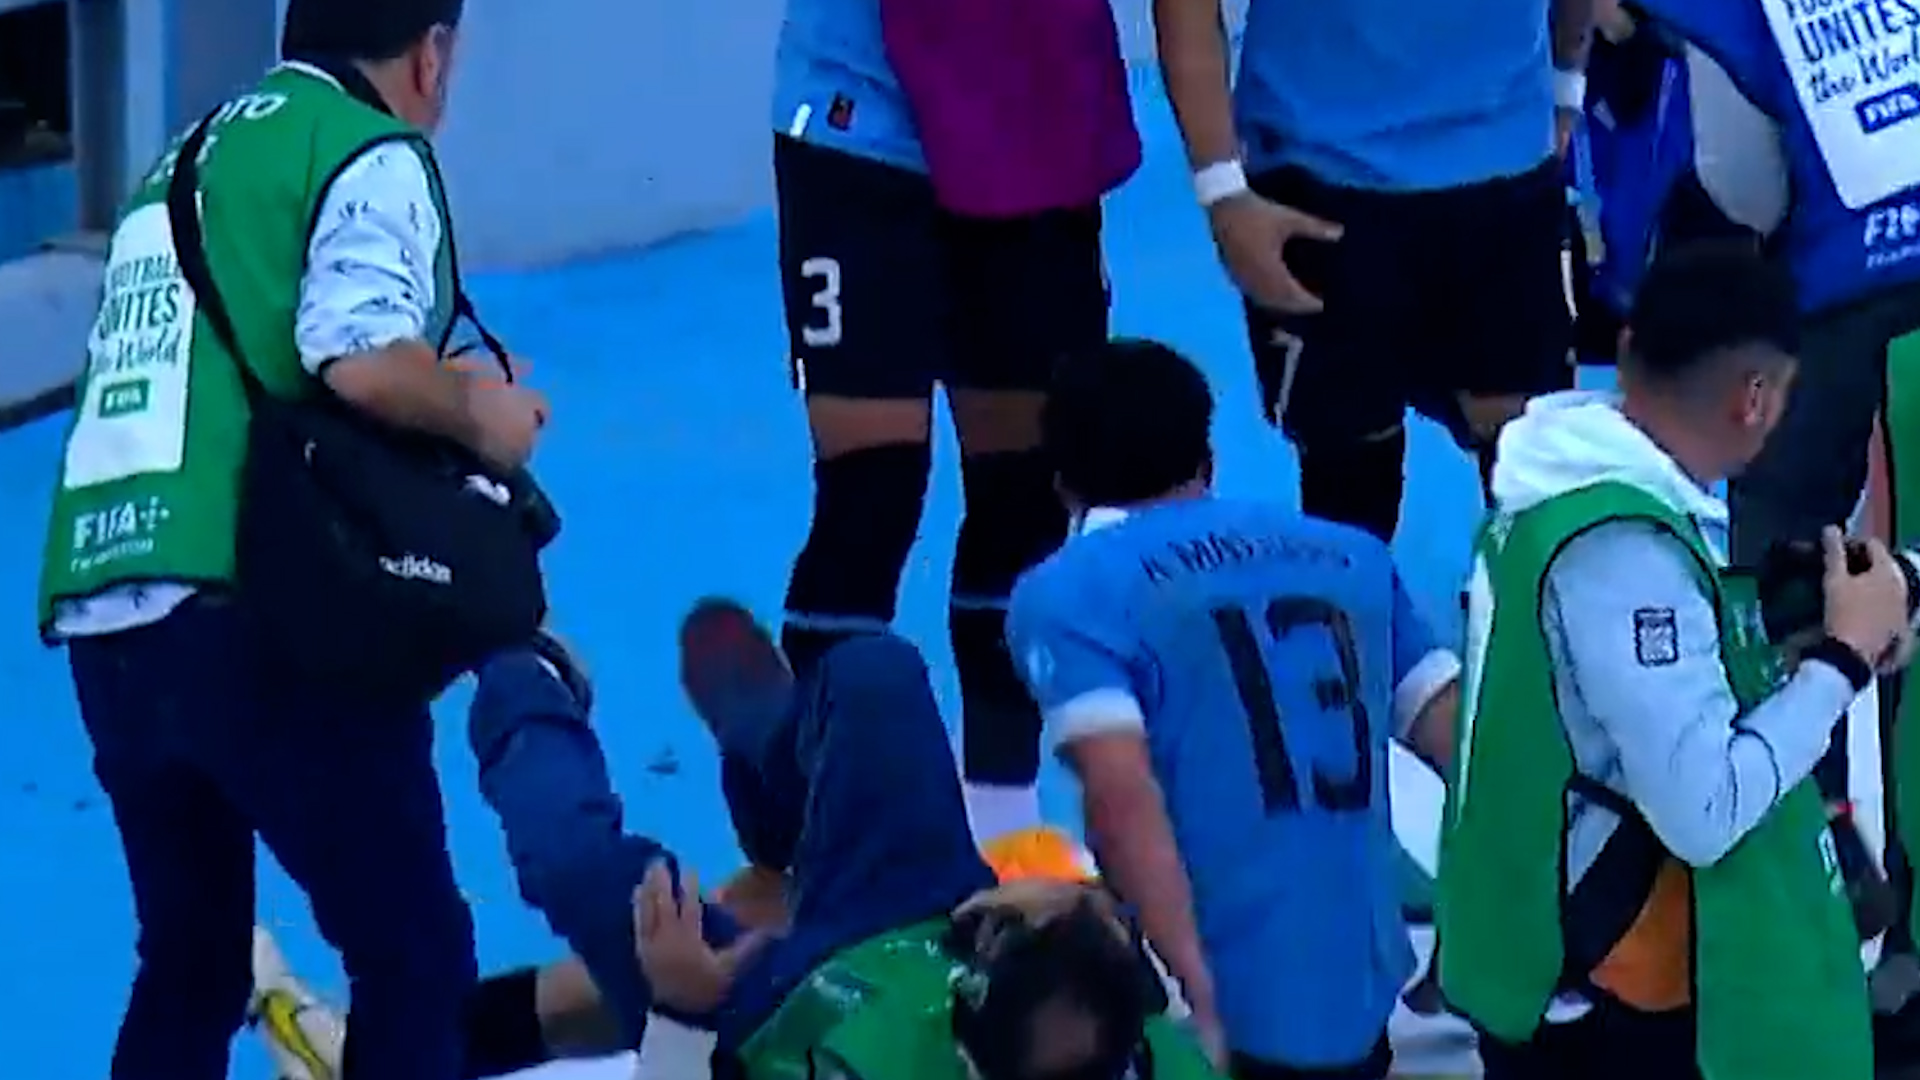 Fue a abrazar a su compañero, se patinó y derrumbó a un fotógrafo: el blooper en el festejo del gol de Uruguay ante Israel